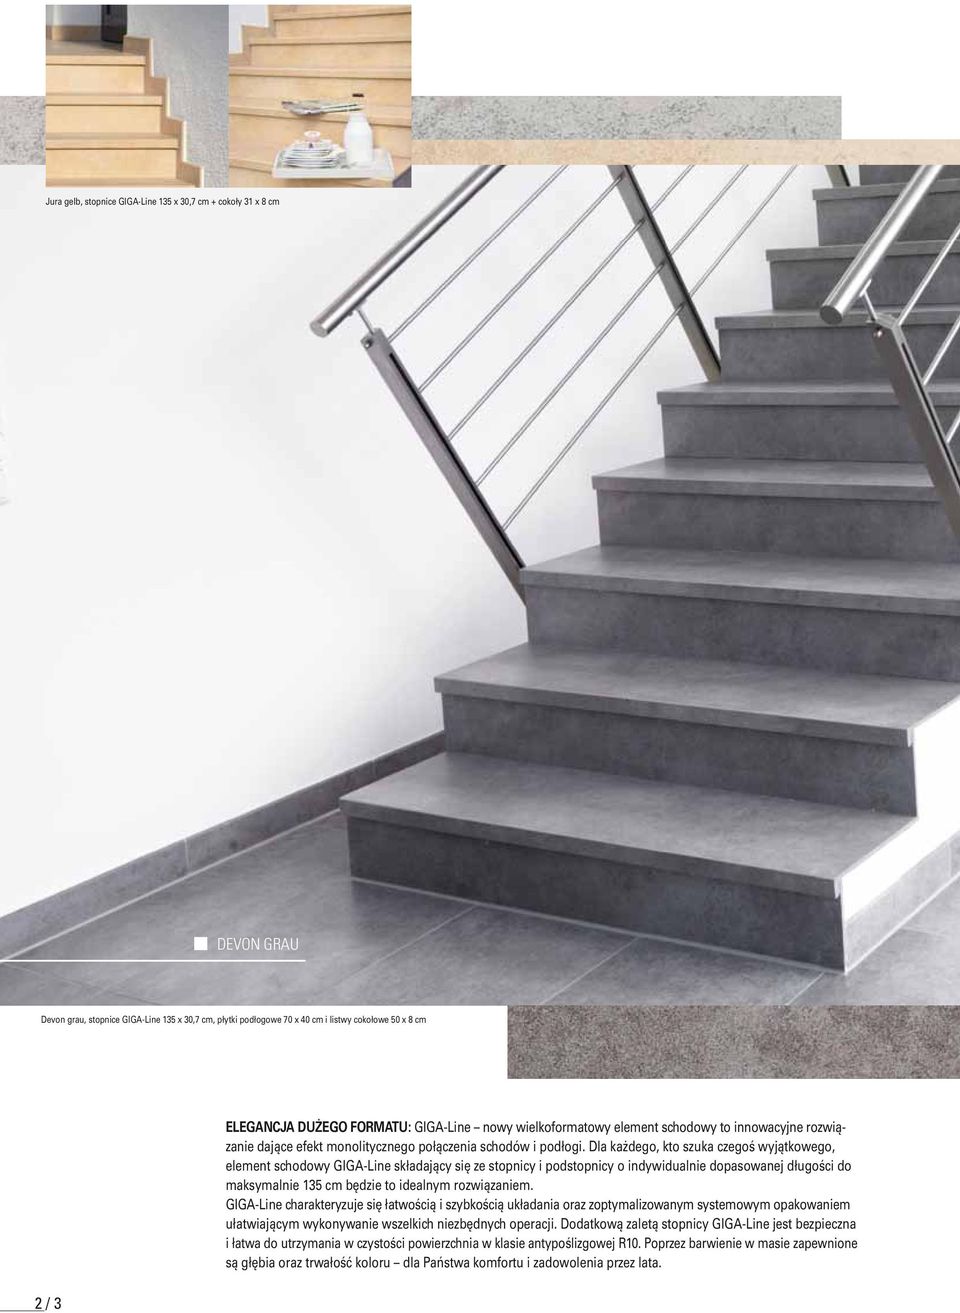 Dla każdego, kto szuka czegoś wyjątkowego, element schodowy GIGA-Line składający się ze stopnicy i podstopnicy o indywidualnie dopasowanej długości do maksymalnie 135 cm będzie to idealnym